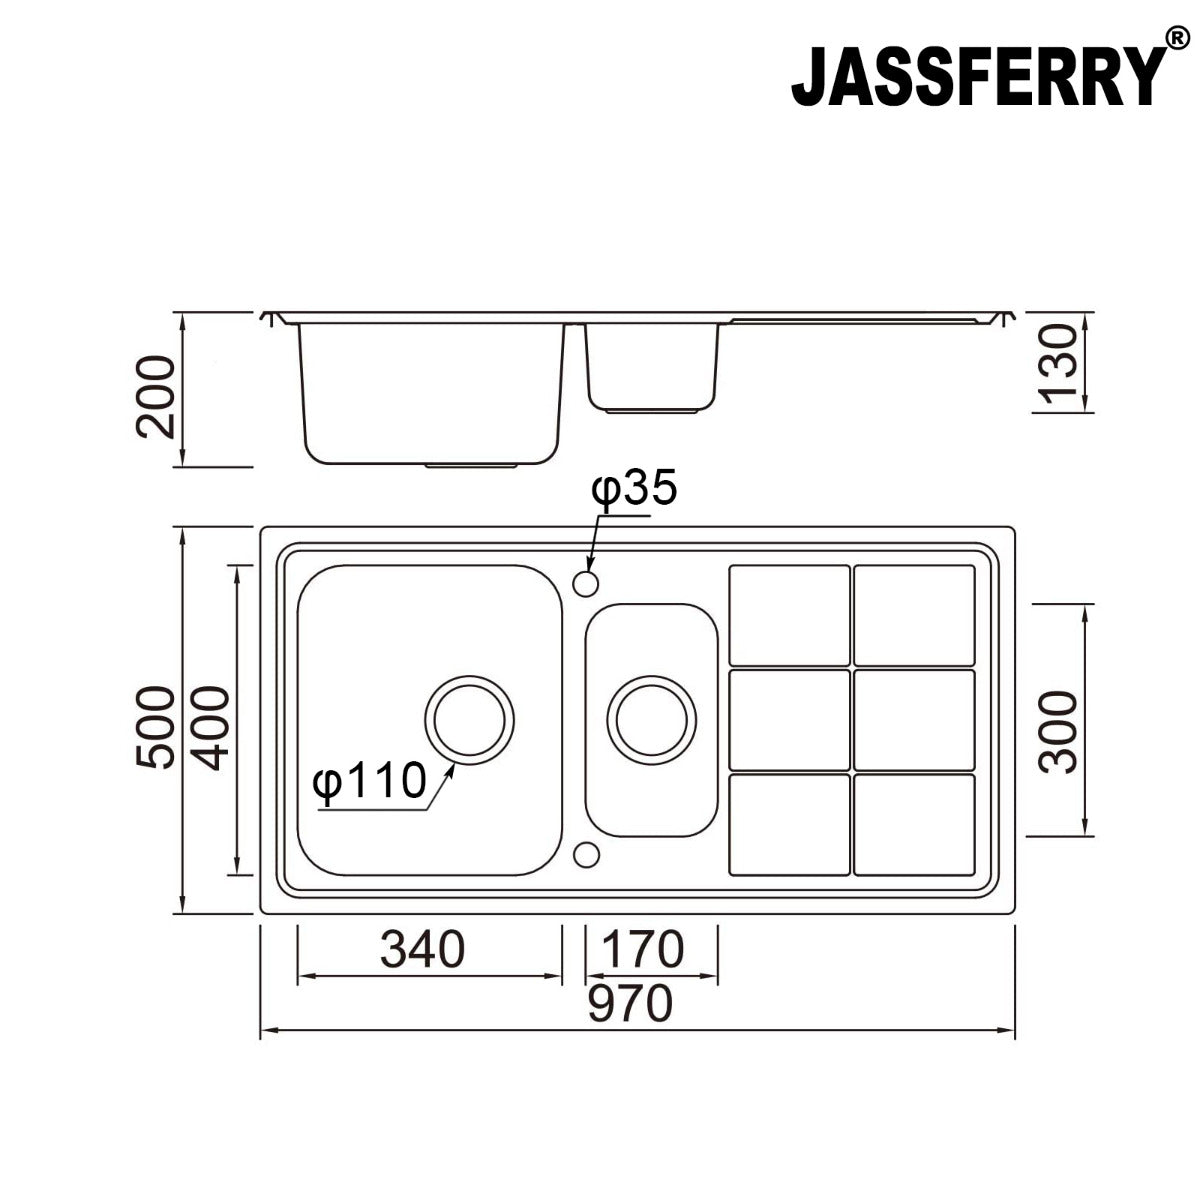 JassferryJASSFERRY Stainless Steel Kitchen Sink 1.5 Bowl Rectangle Reversible DrainerKitchen Sink